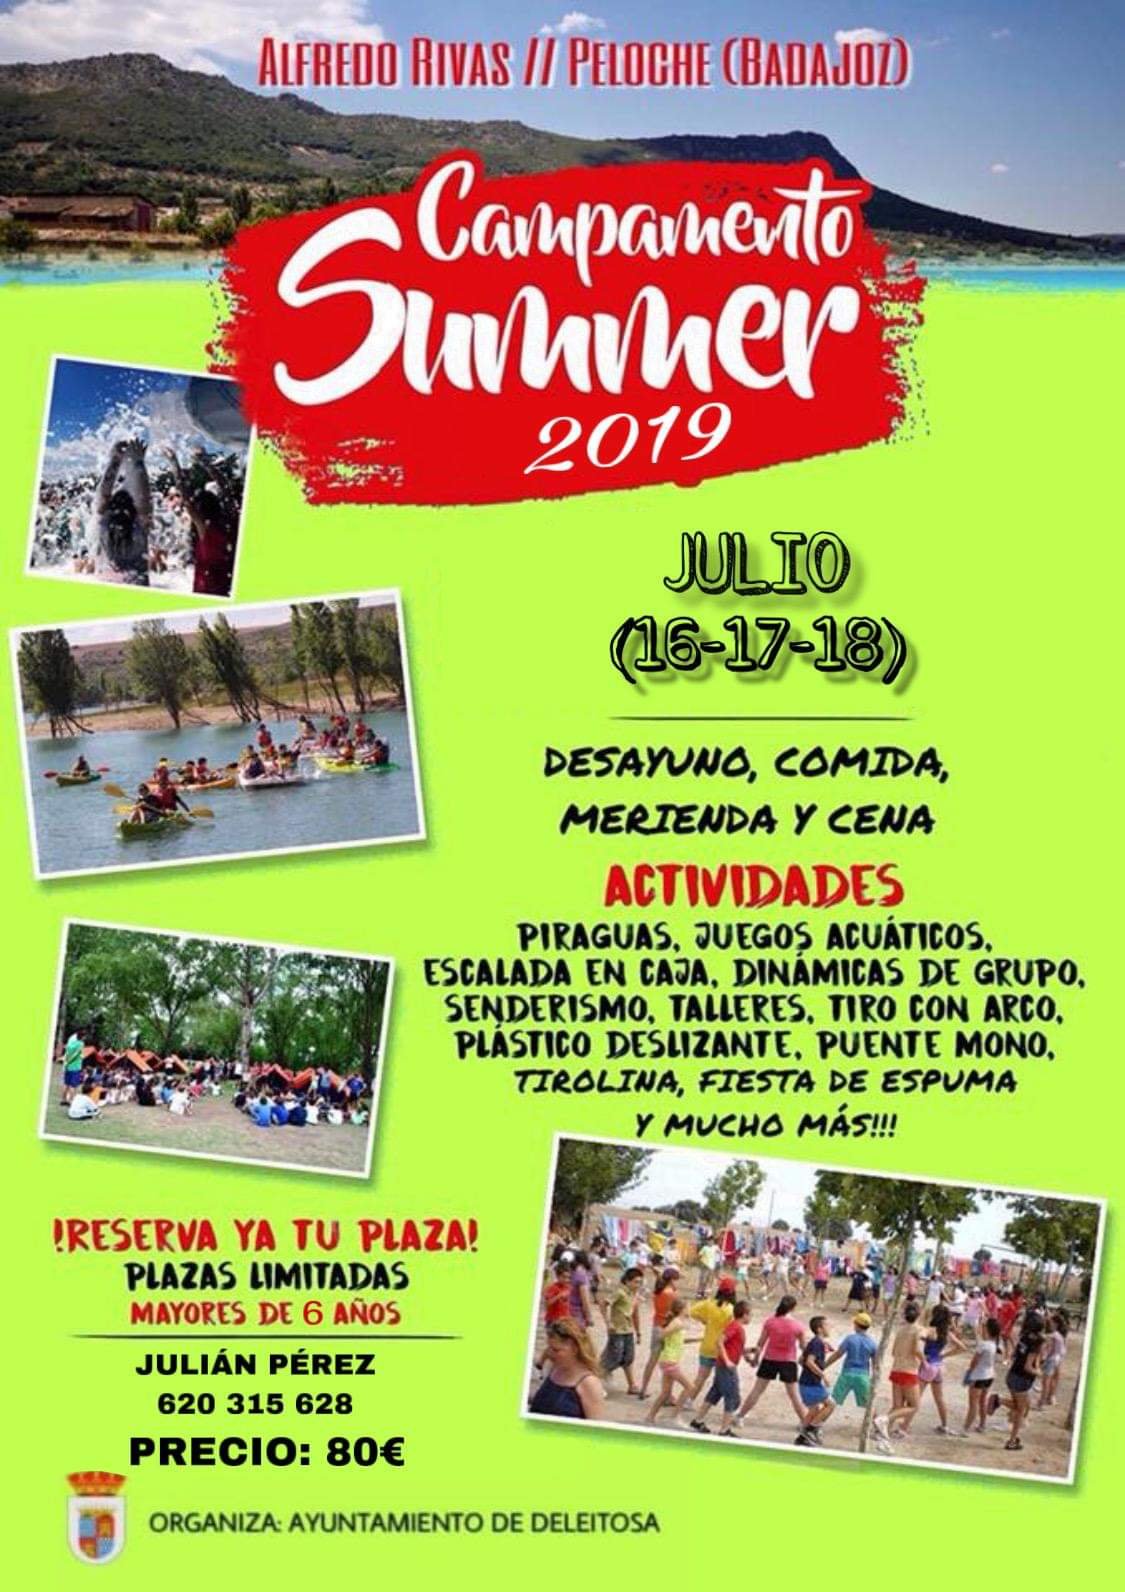 Campamento summer 2019 - Deleitosa (Cáceres)